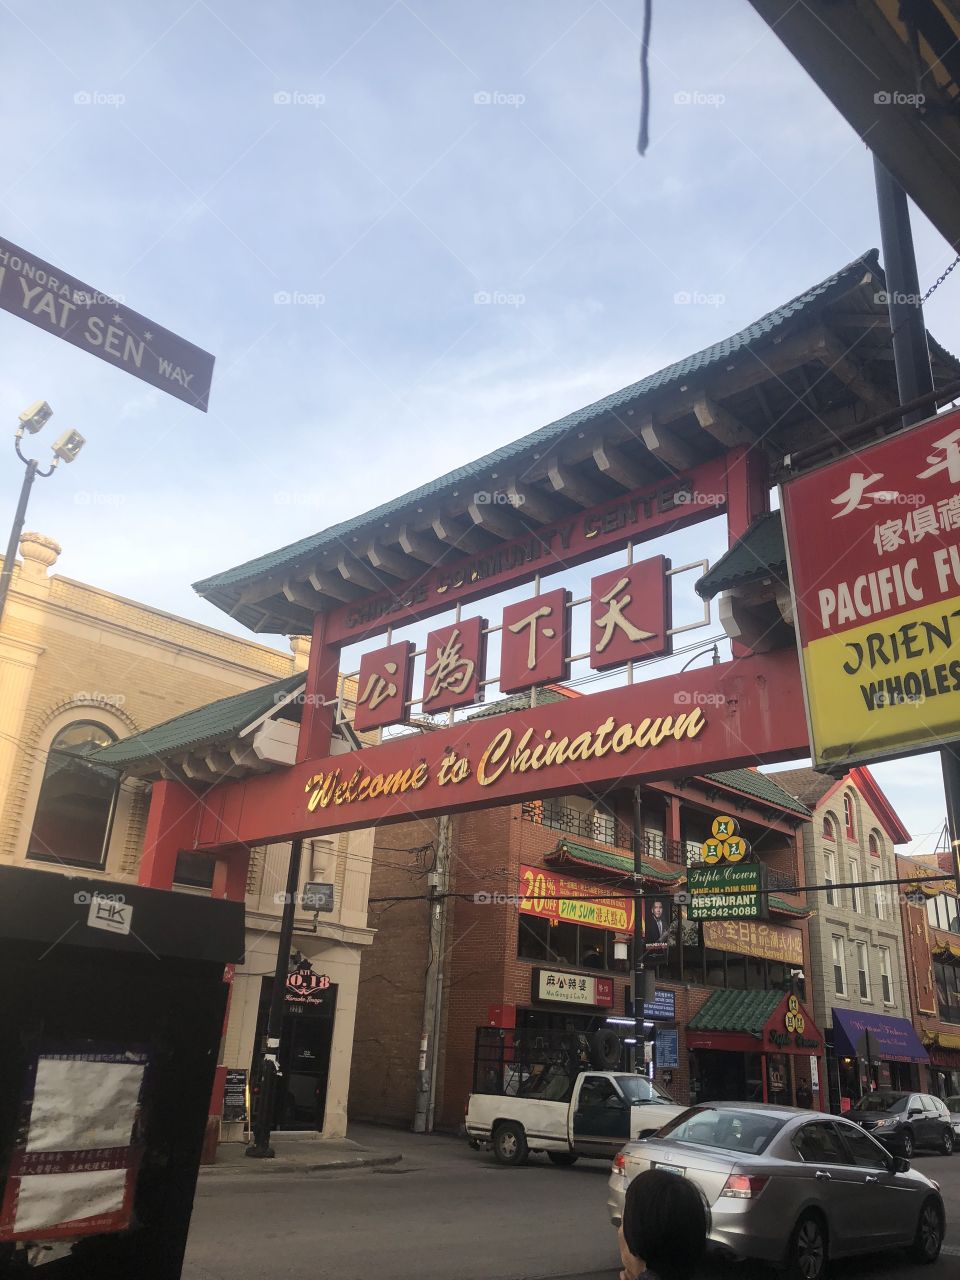 Chinatown (Chicago)